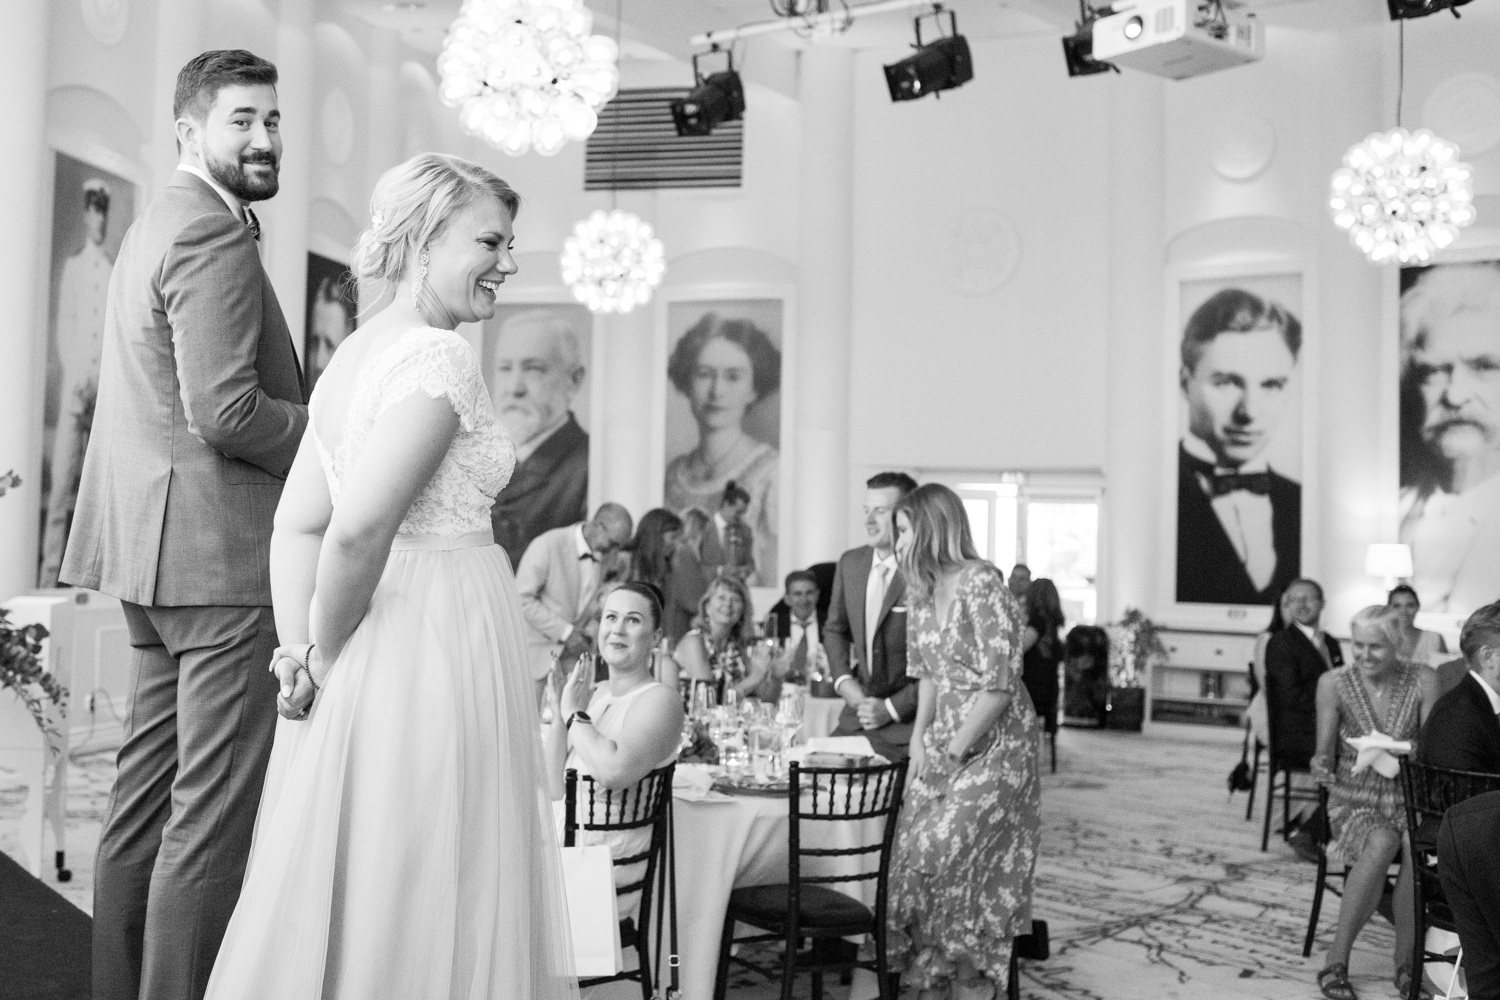 Fotograf Tove Lundquist tipsar om roliga bröllopslekar för festen! På bilden ser ni bröllopsleken "Hur väl känner brudparet sina gäster?" under ett strandbröllop på Ystad Saltsjöbad i Skåne. 